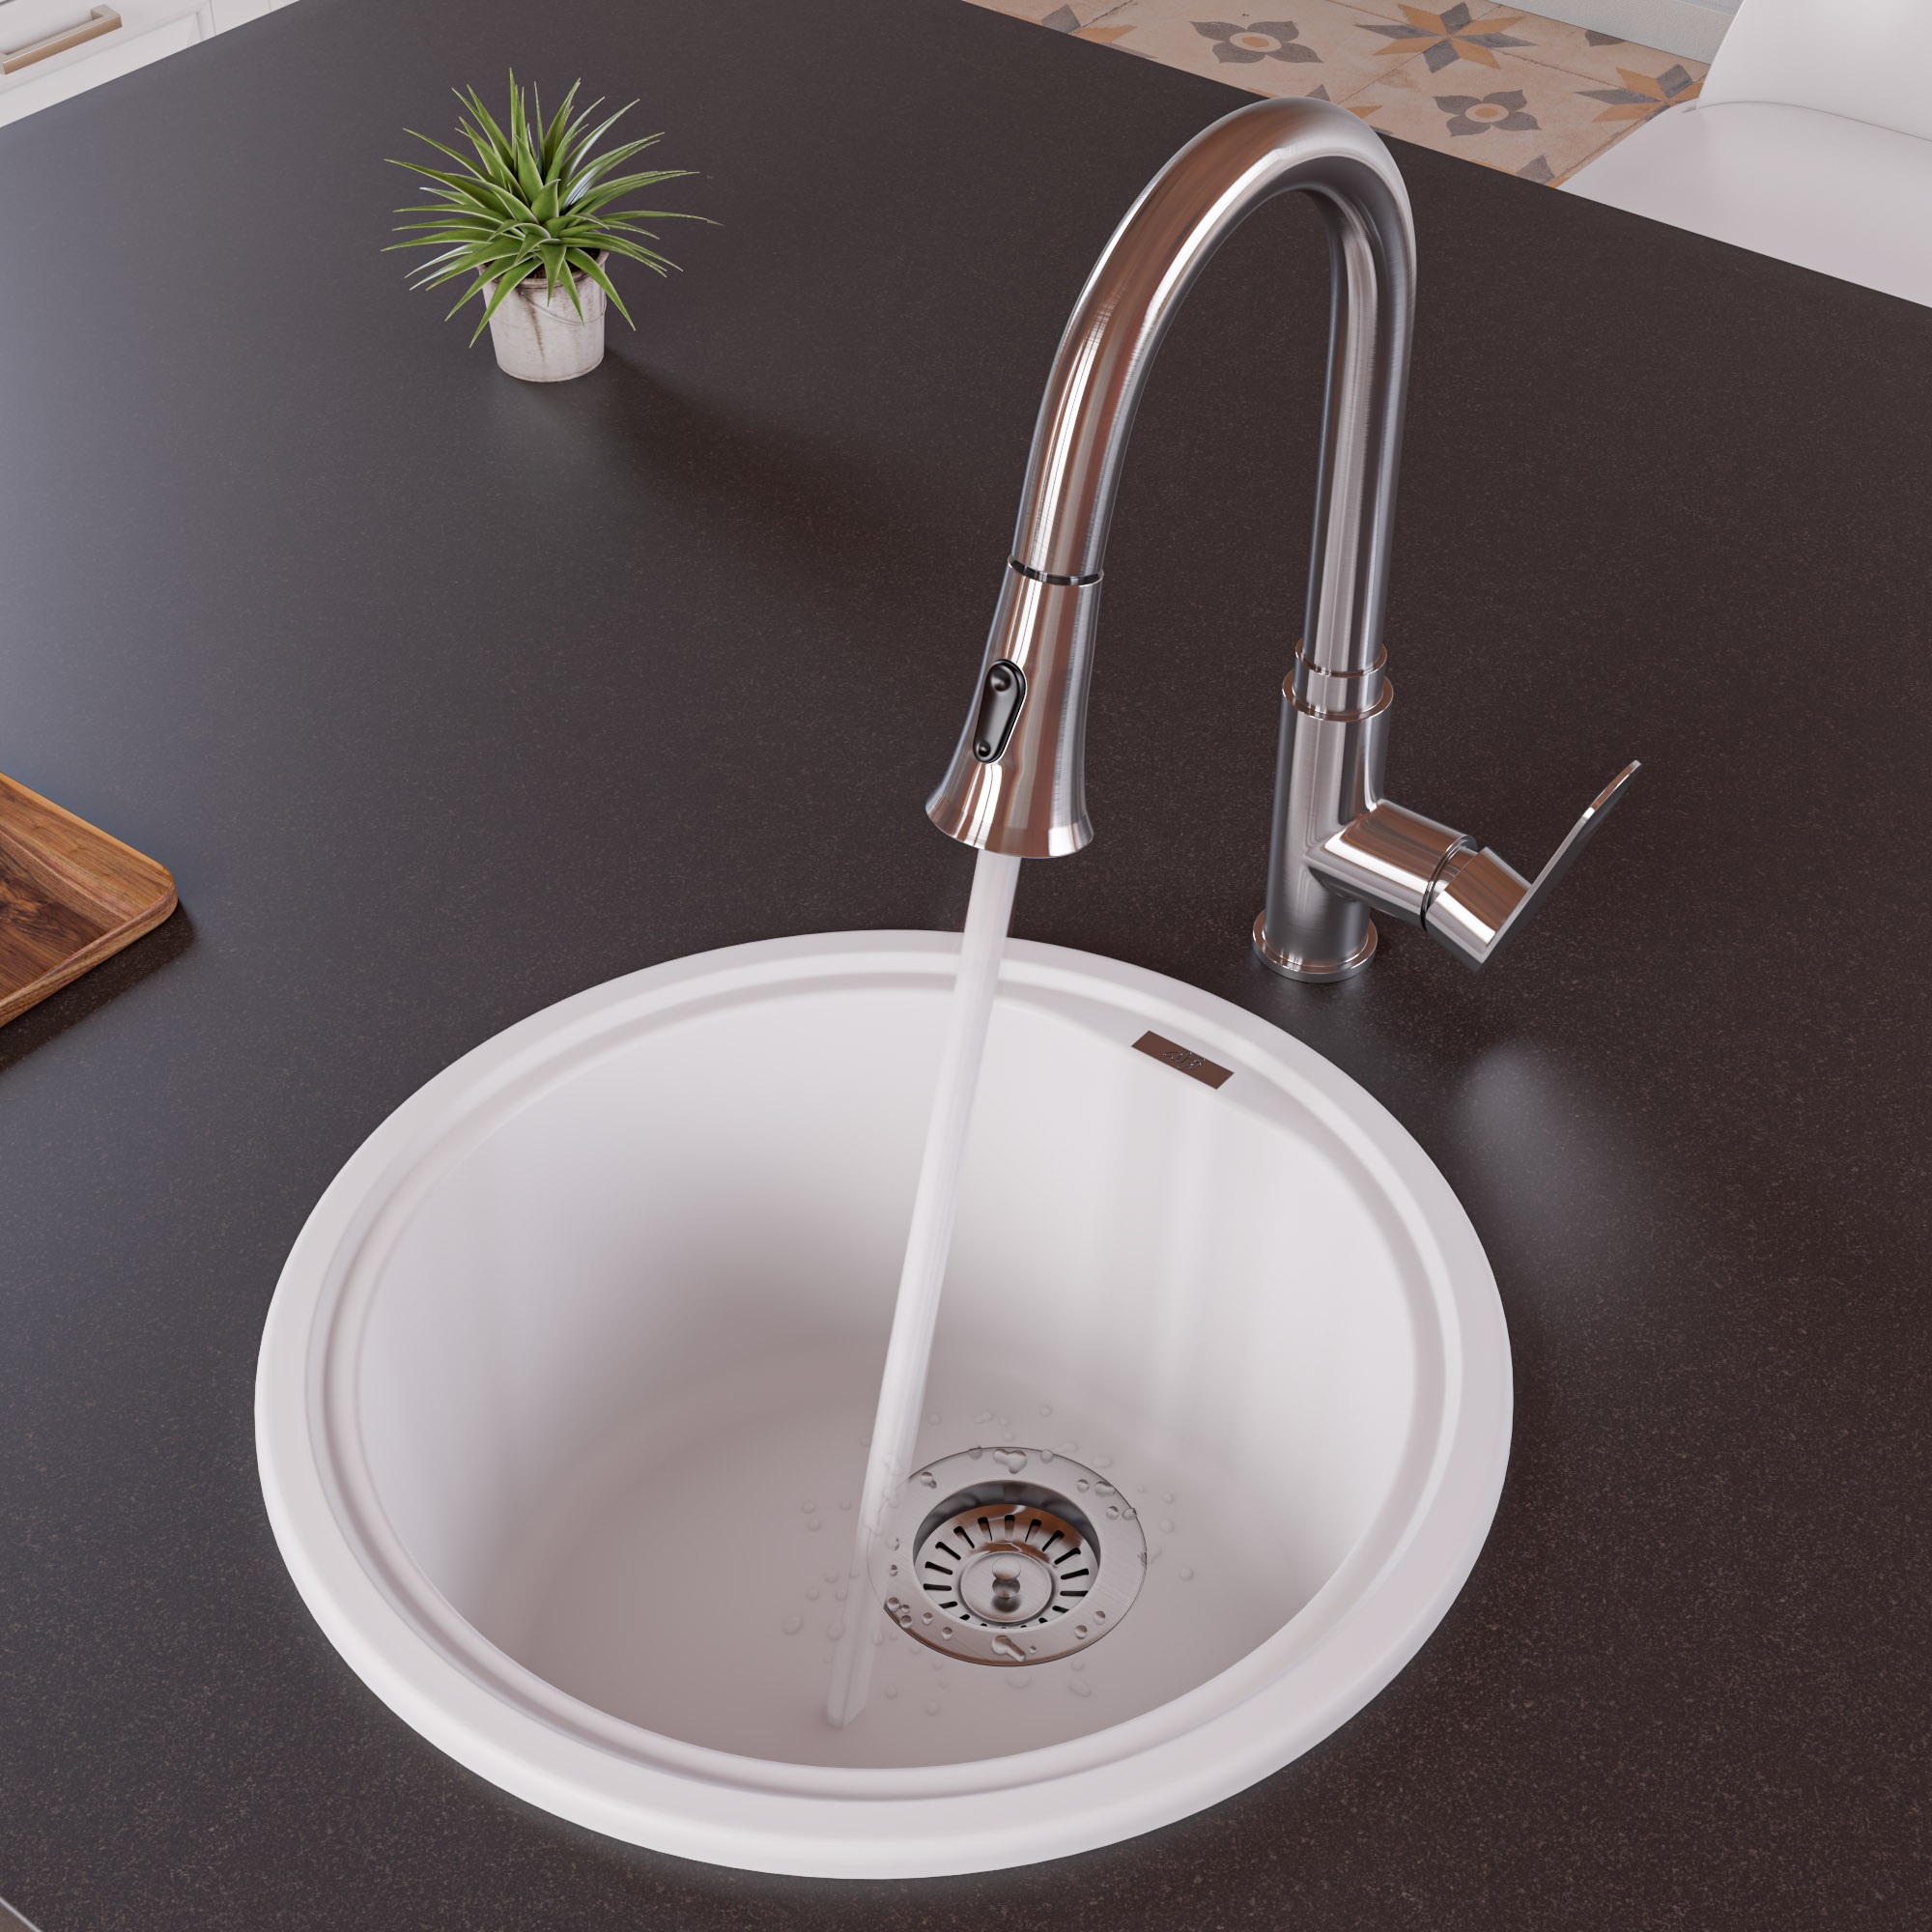 Picture of ALFI Brand AB1717DI-W Drop-In Round Granite Composite Kitchen Prep Sink - White- 17 in.